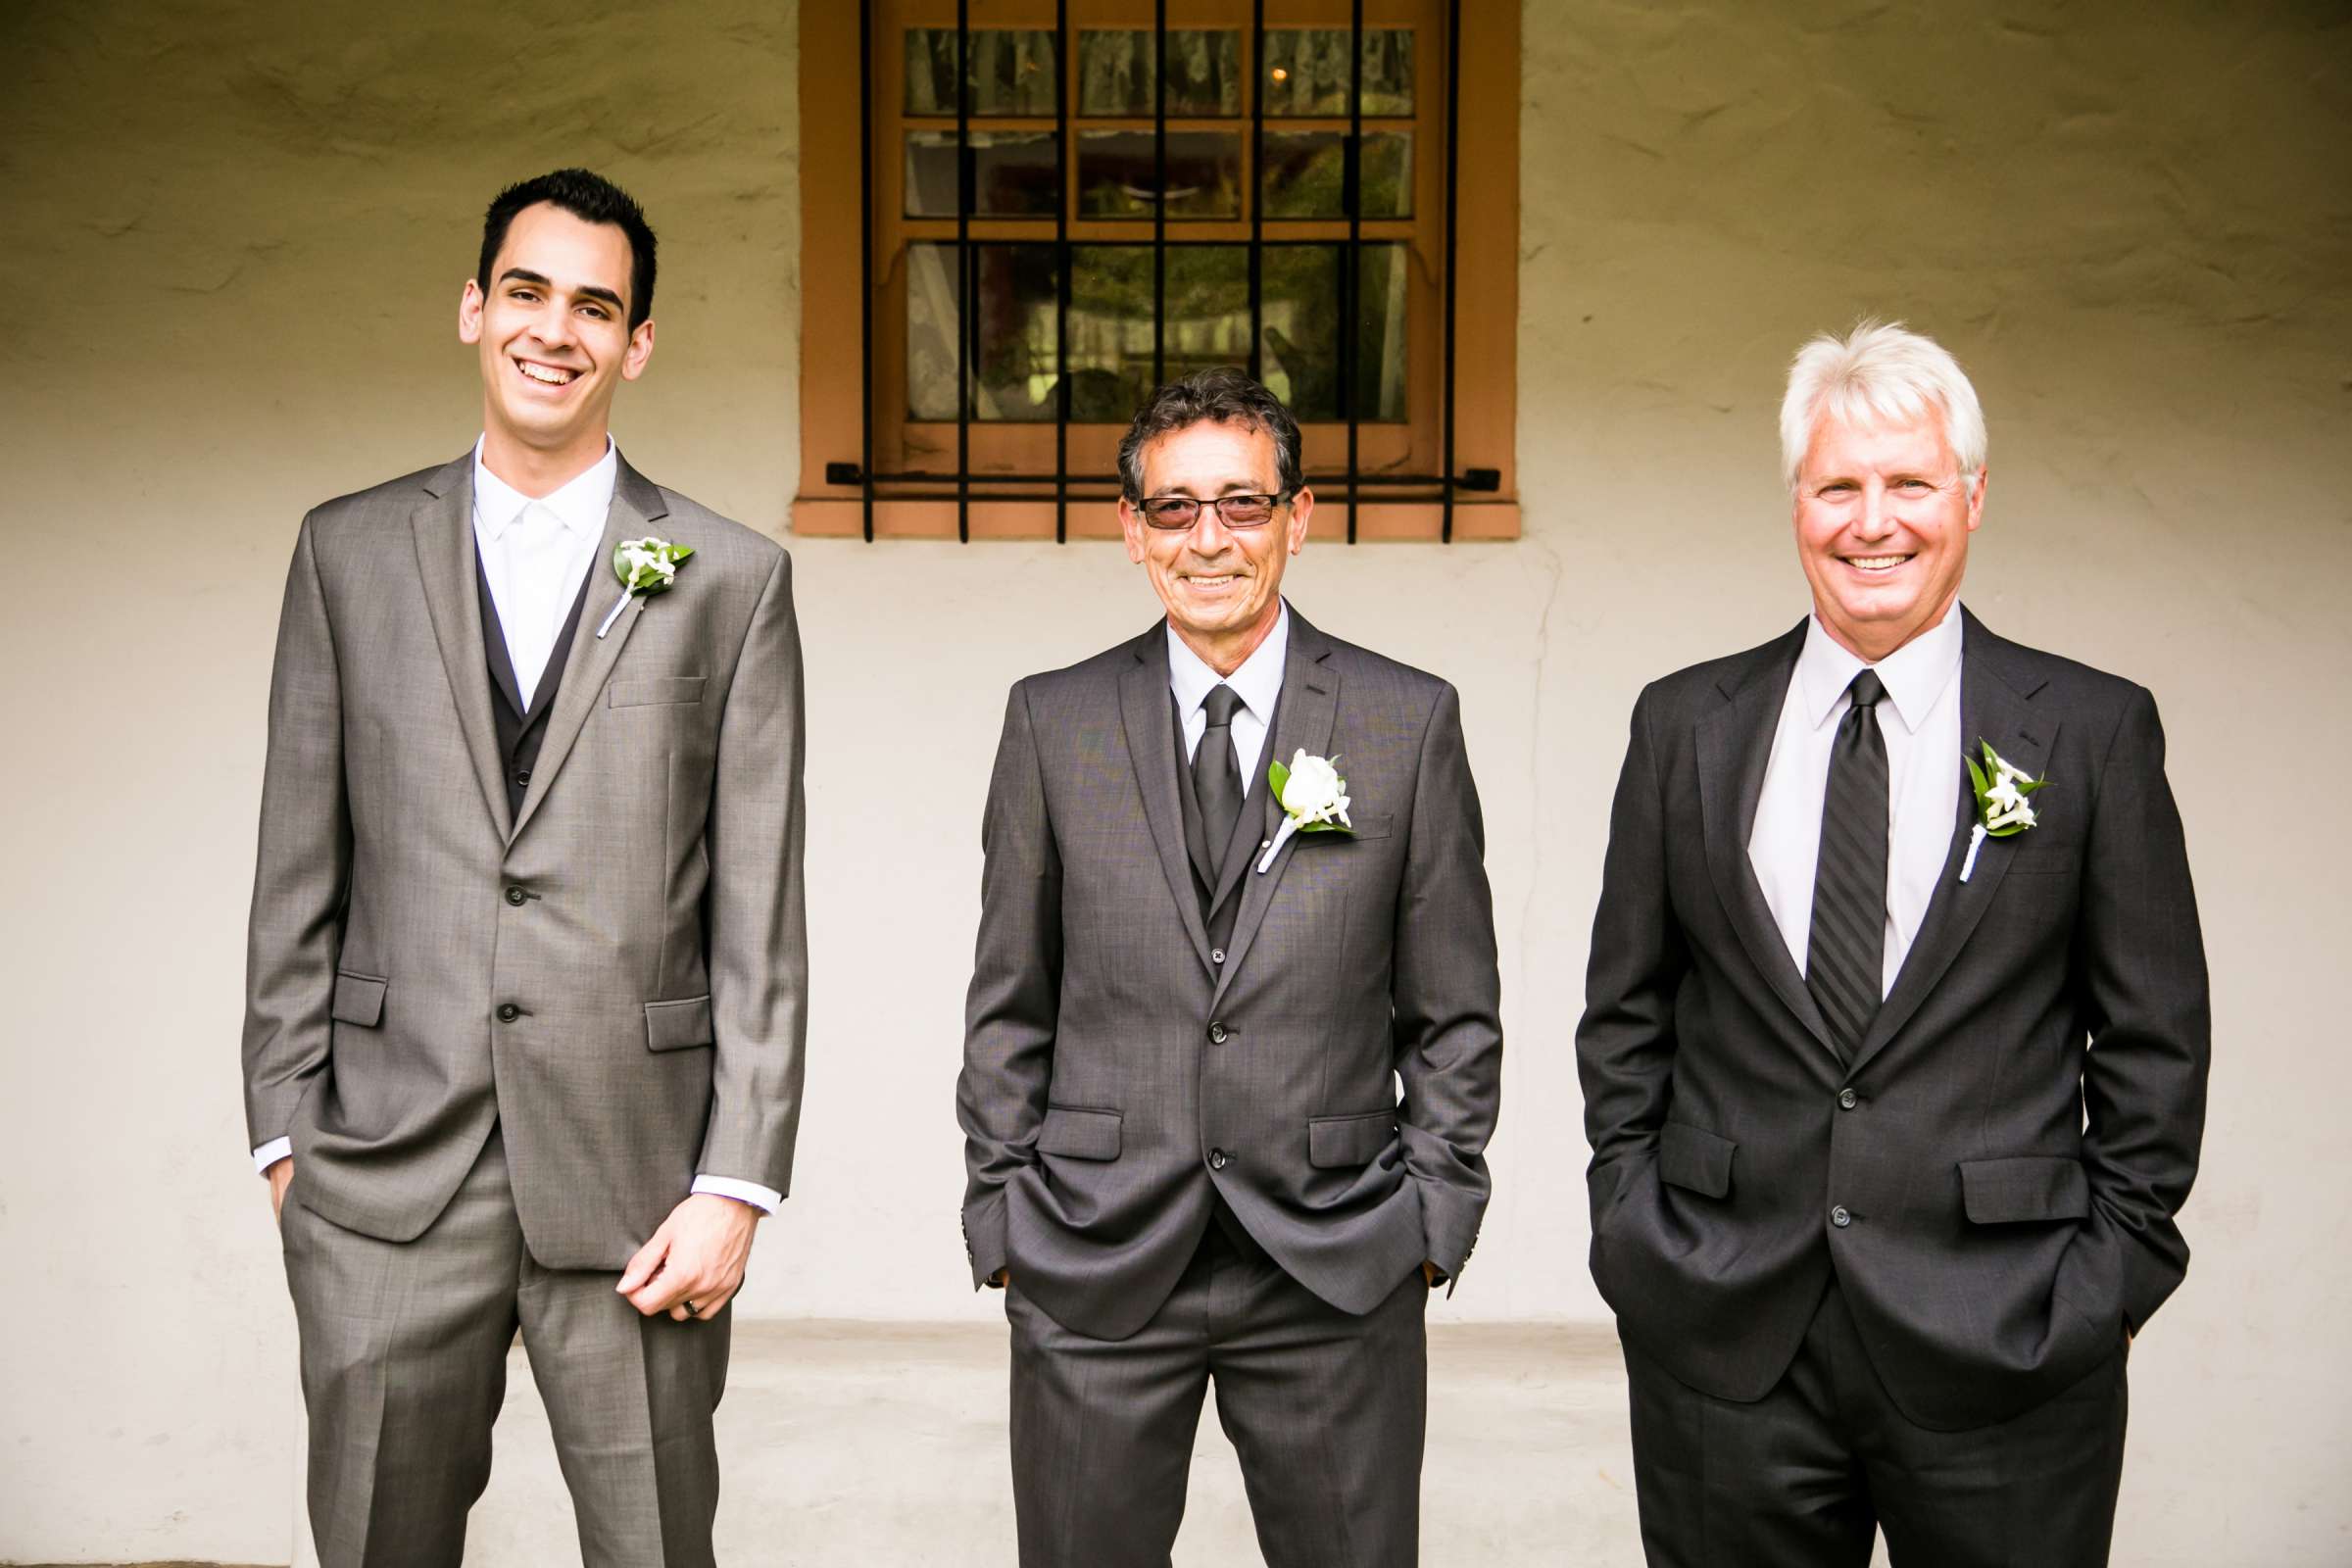 Rancho Buena Vista Adobe Wedding, Ellinor and Frank Wedding Photo #15 by True Photography